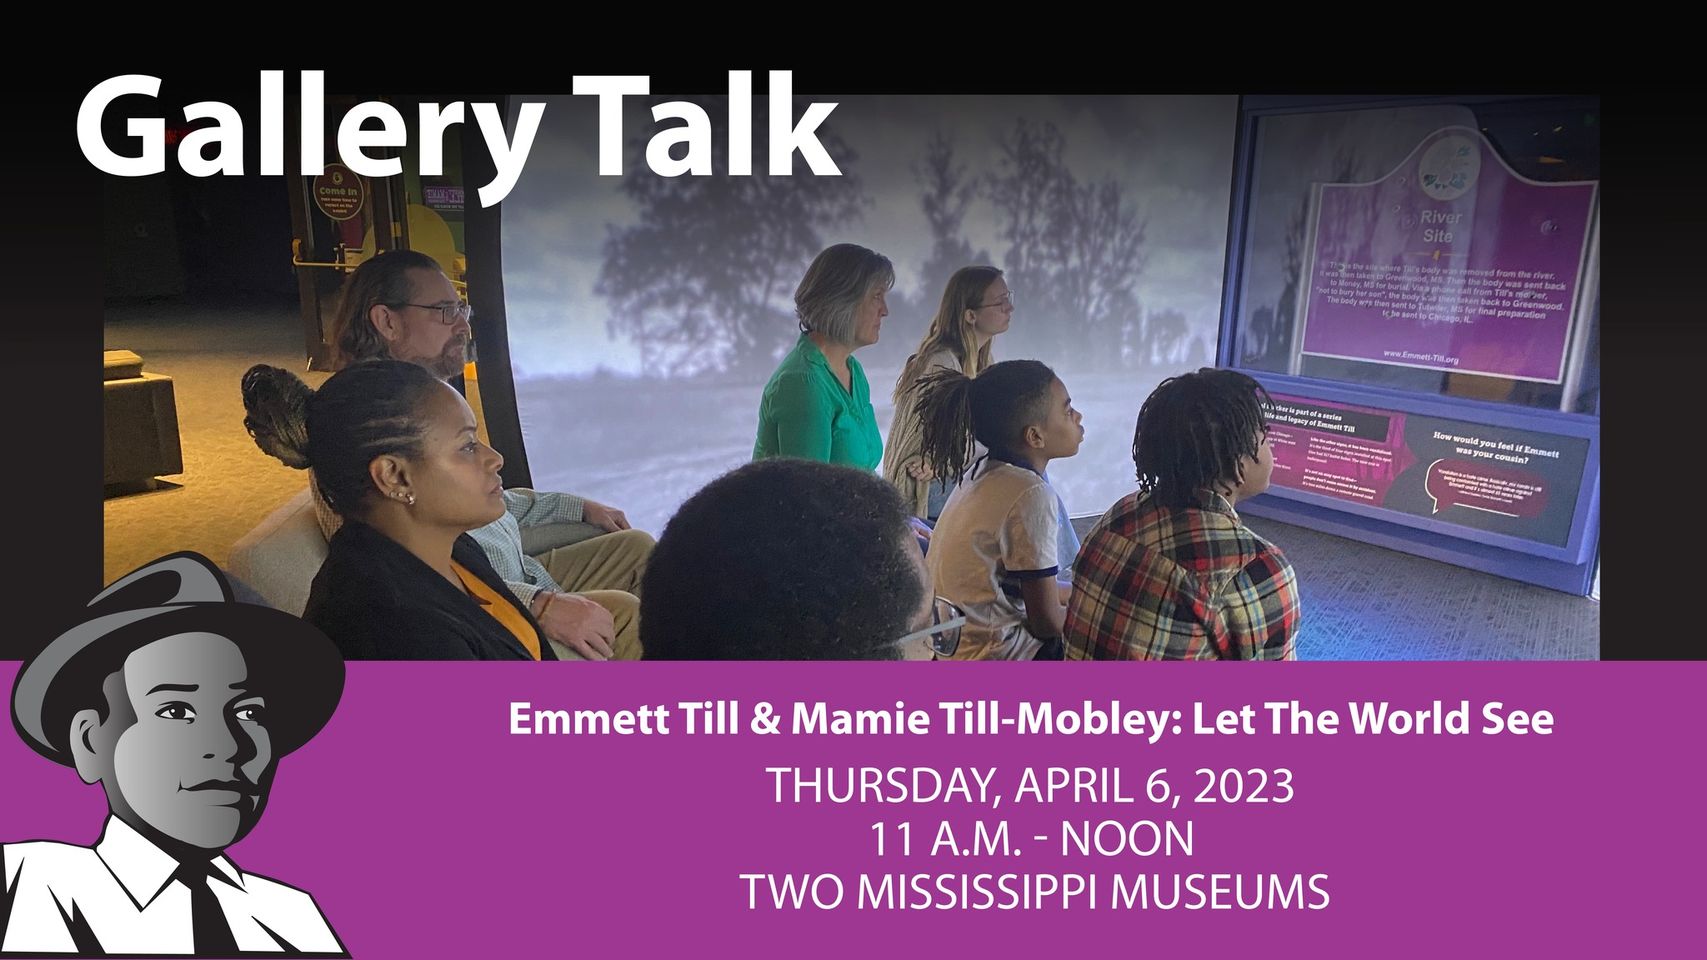 Emmett Till & Mamie Till-Mobley: Let The World See Gallery Talk